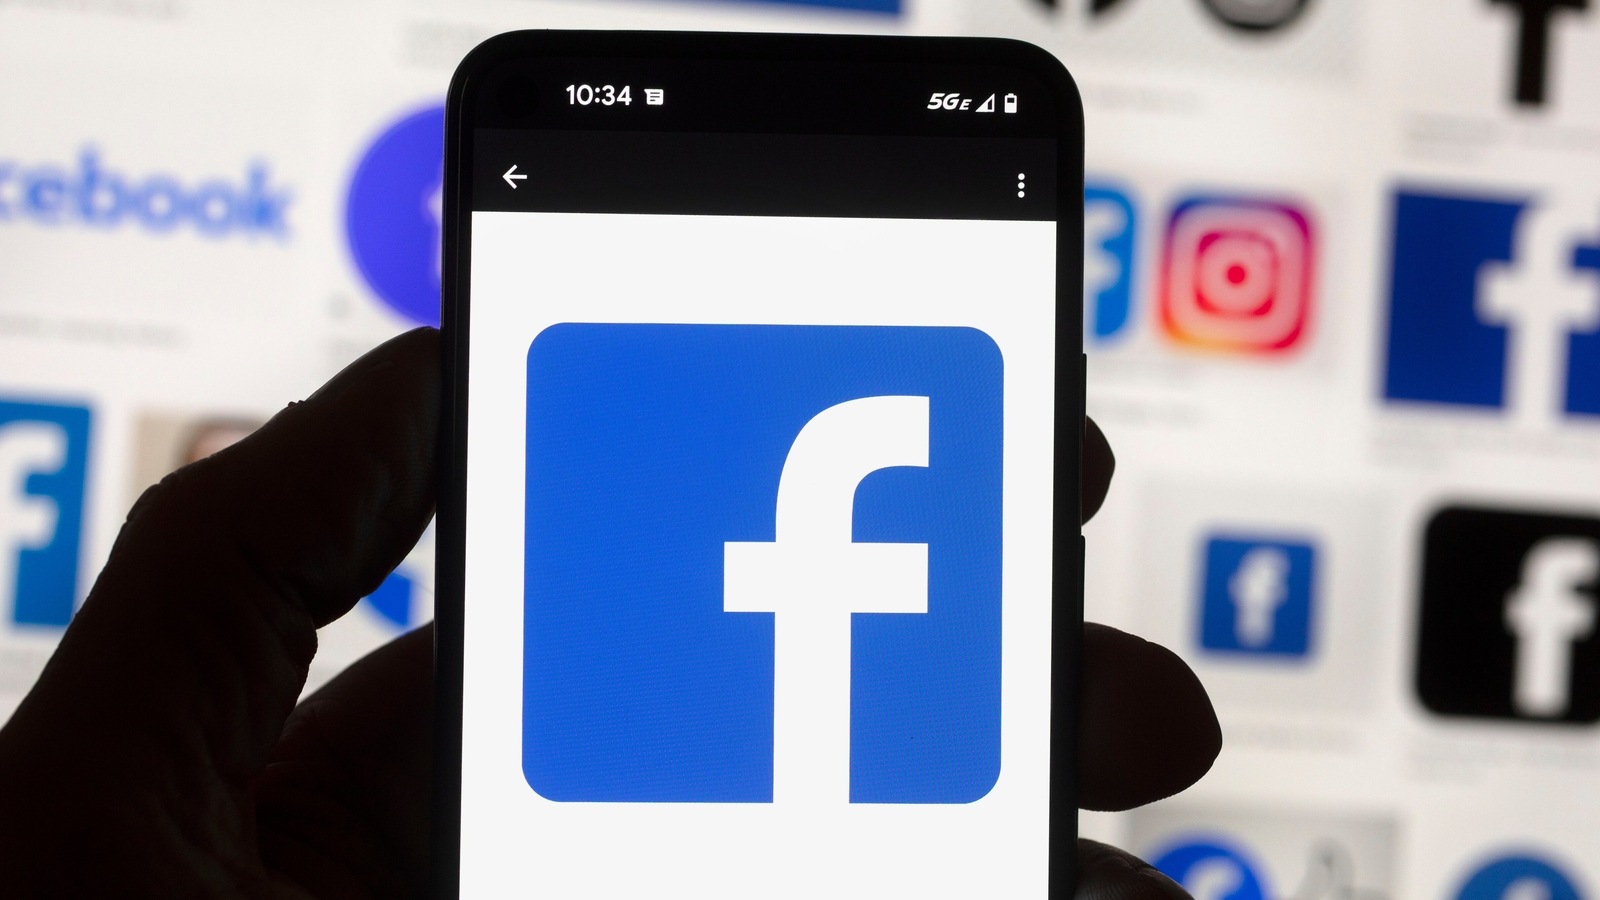 Avatar bergaya bitmoji Facebook kini hadir di WhatsApp